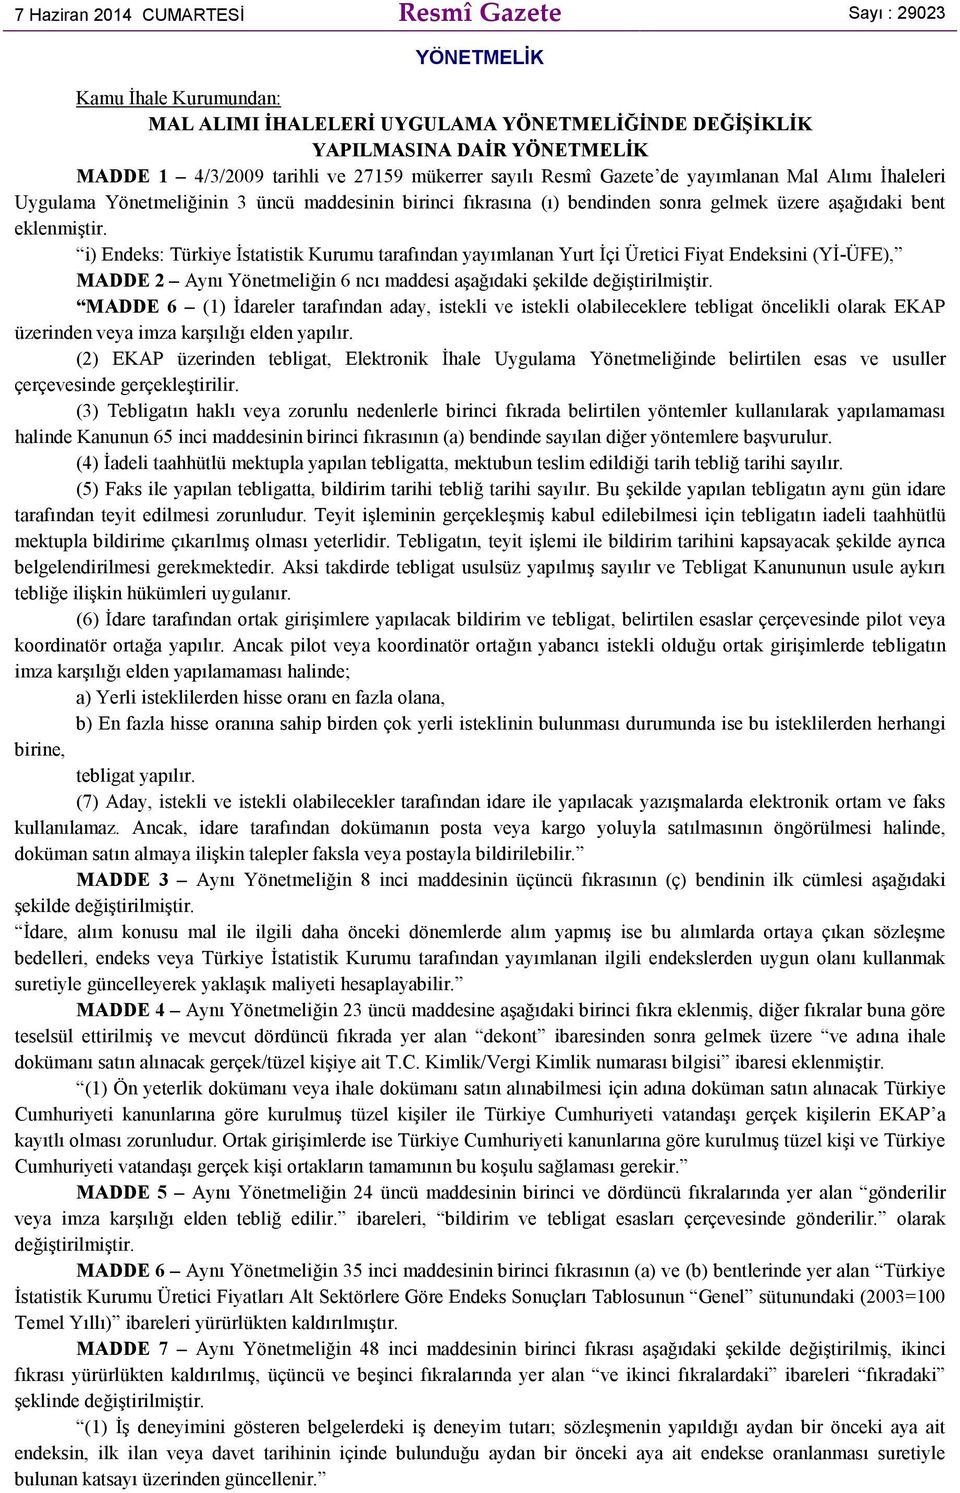 i) Endeks: Türkiye Đstatistik Kurumu tarafından yayımlanan Yurt Đçi Üretici Fiyat Endeksini (YĐ-ÜFE), MADDE 2 Aynı Yönetmeliğin 6 ncı maddesi aşağıdaki şekilde değiştirilmiştir.